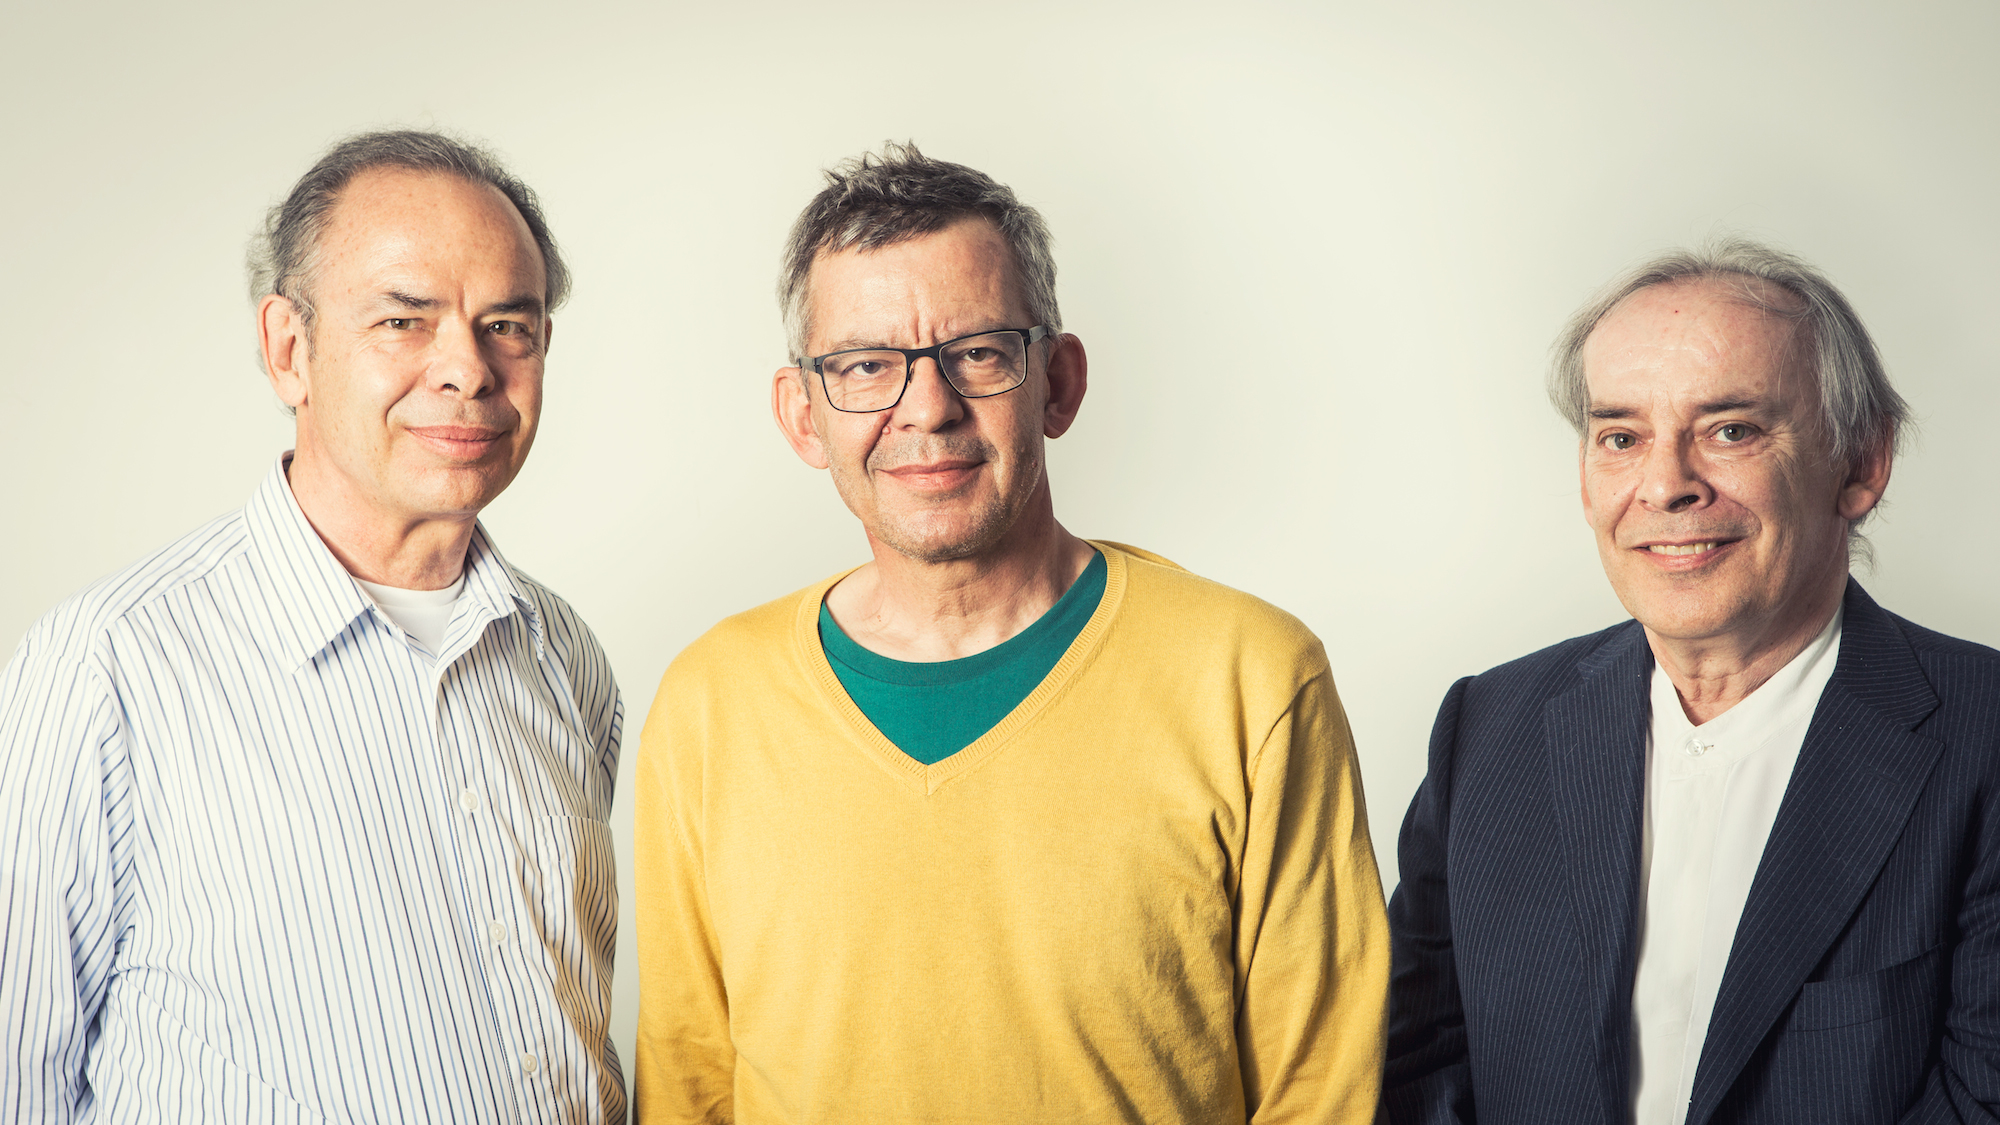 Mit ihrem Engagement für die Erbschaftssteuer wirbeln sie den Abstimmungskampf auf: Martin, Daniel und Marcel Meili (von links).